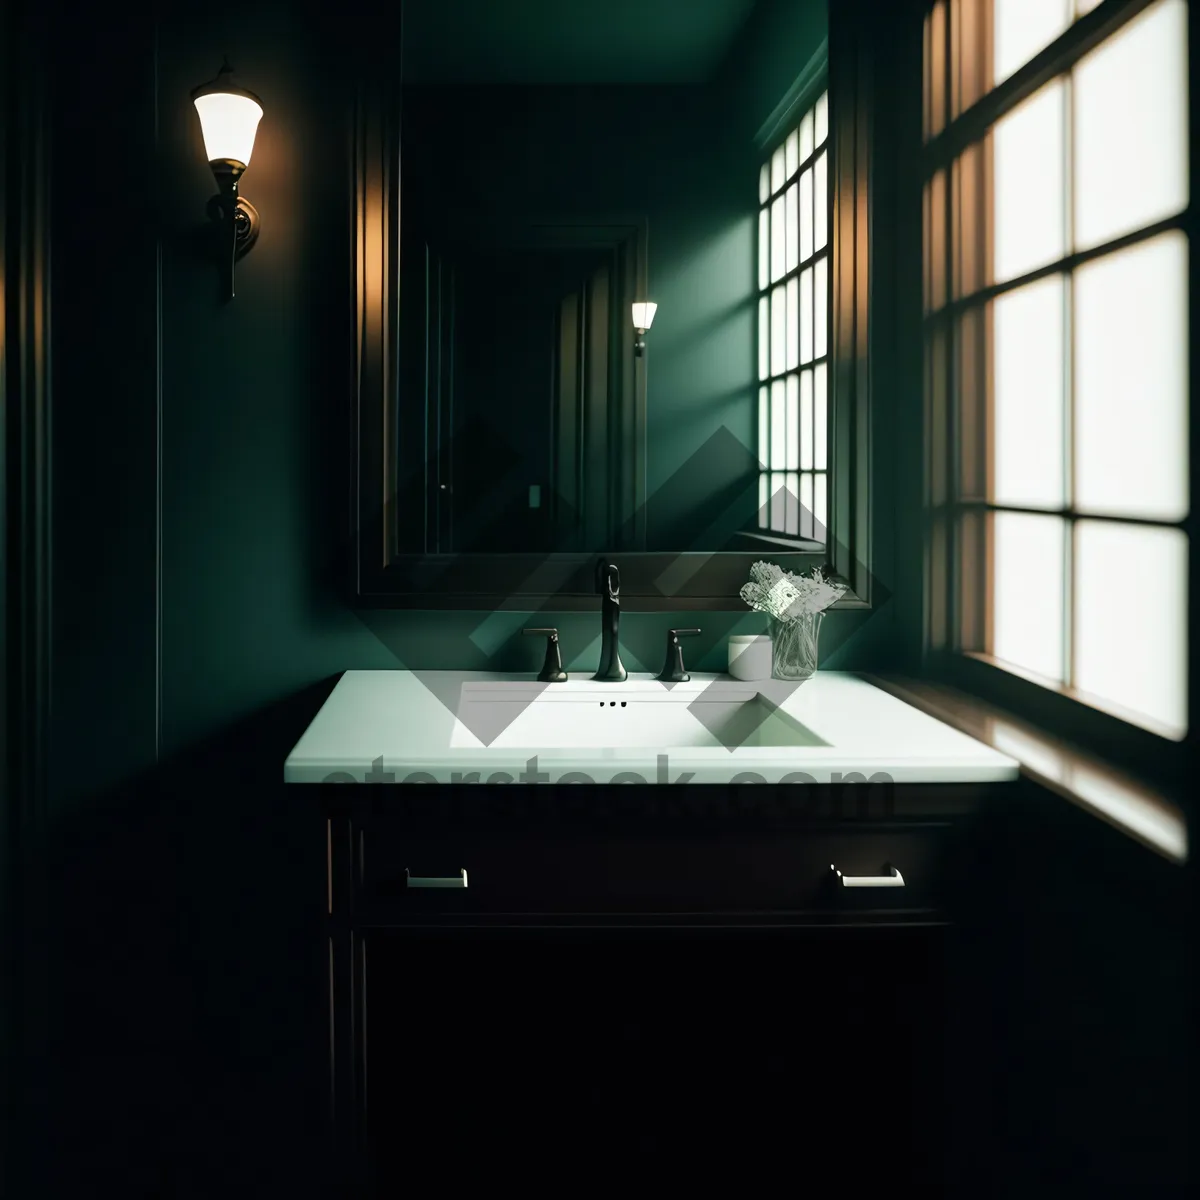 Picture of Sleek Modern Bathroom Sink in Luxury Home